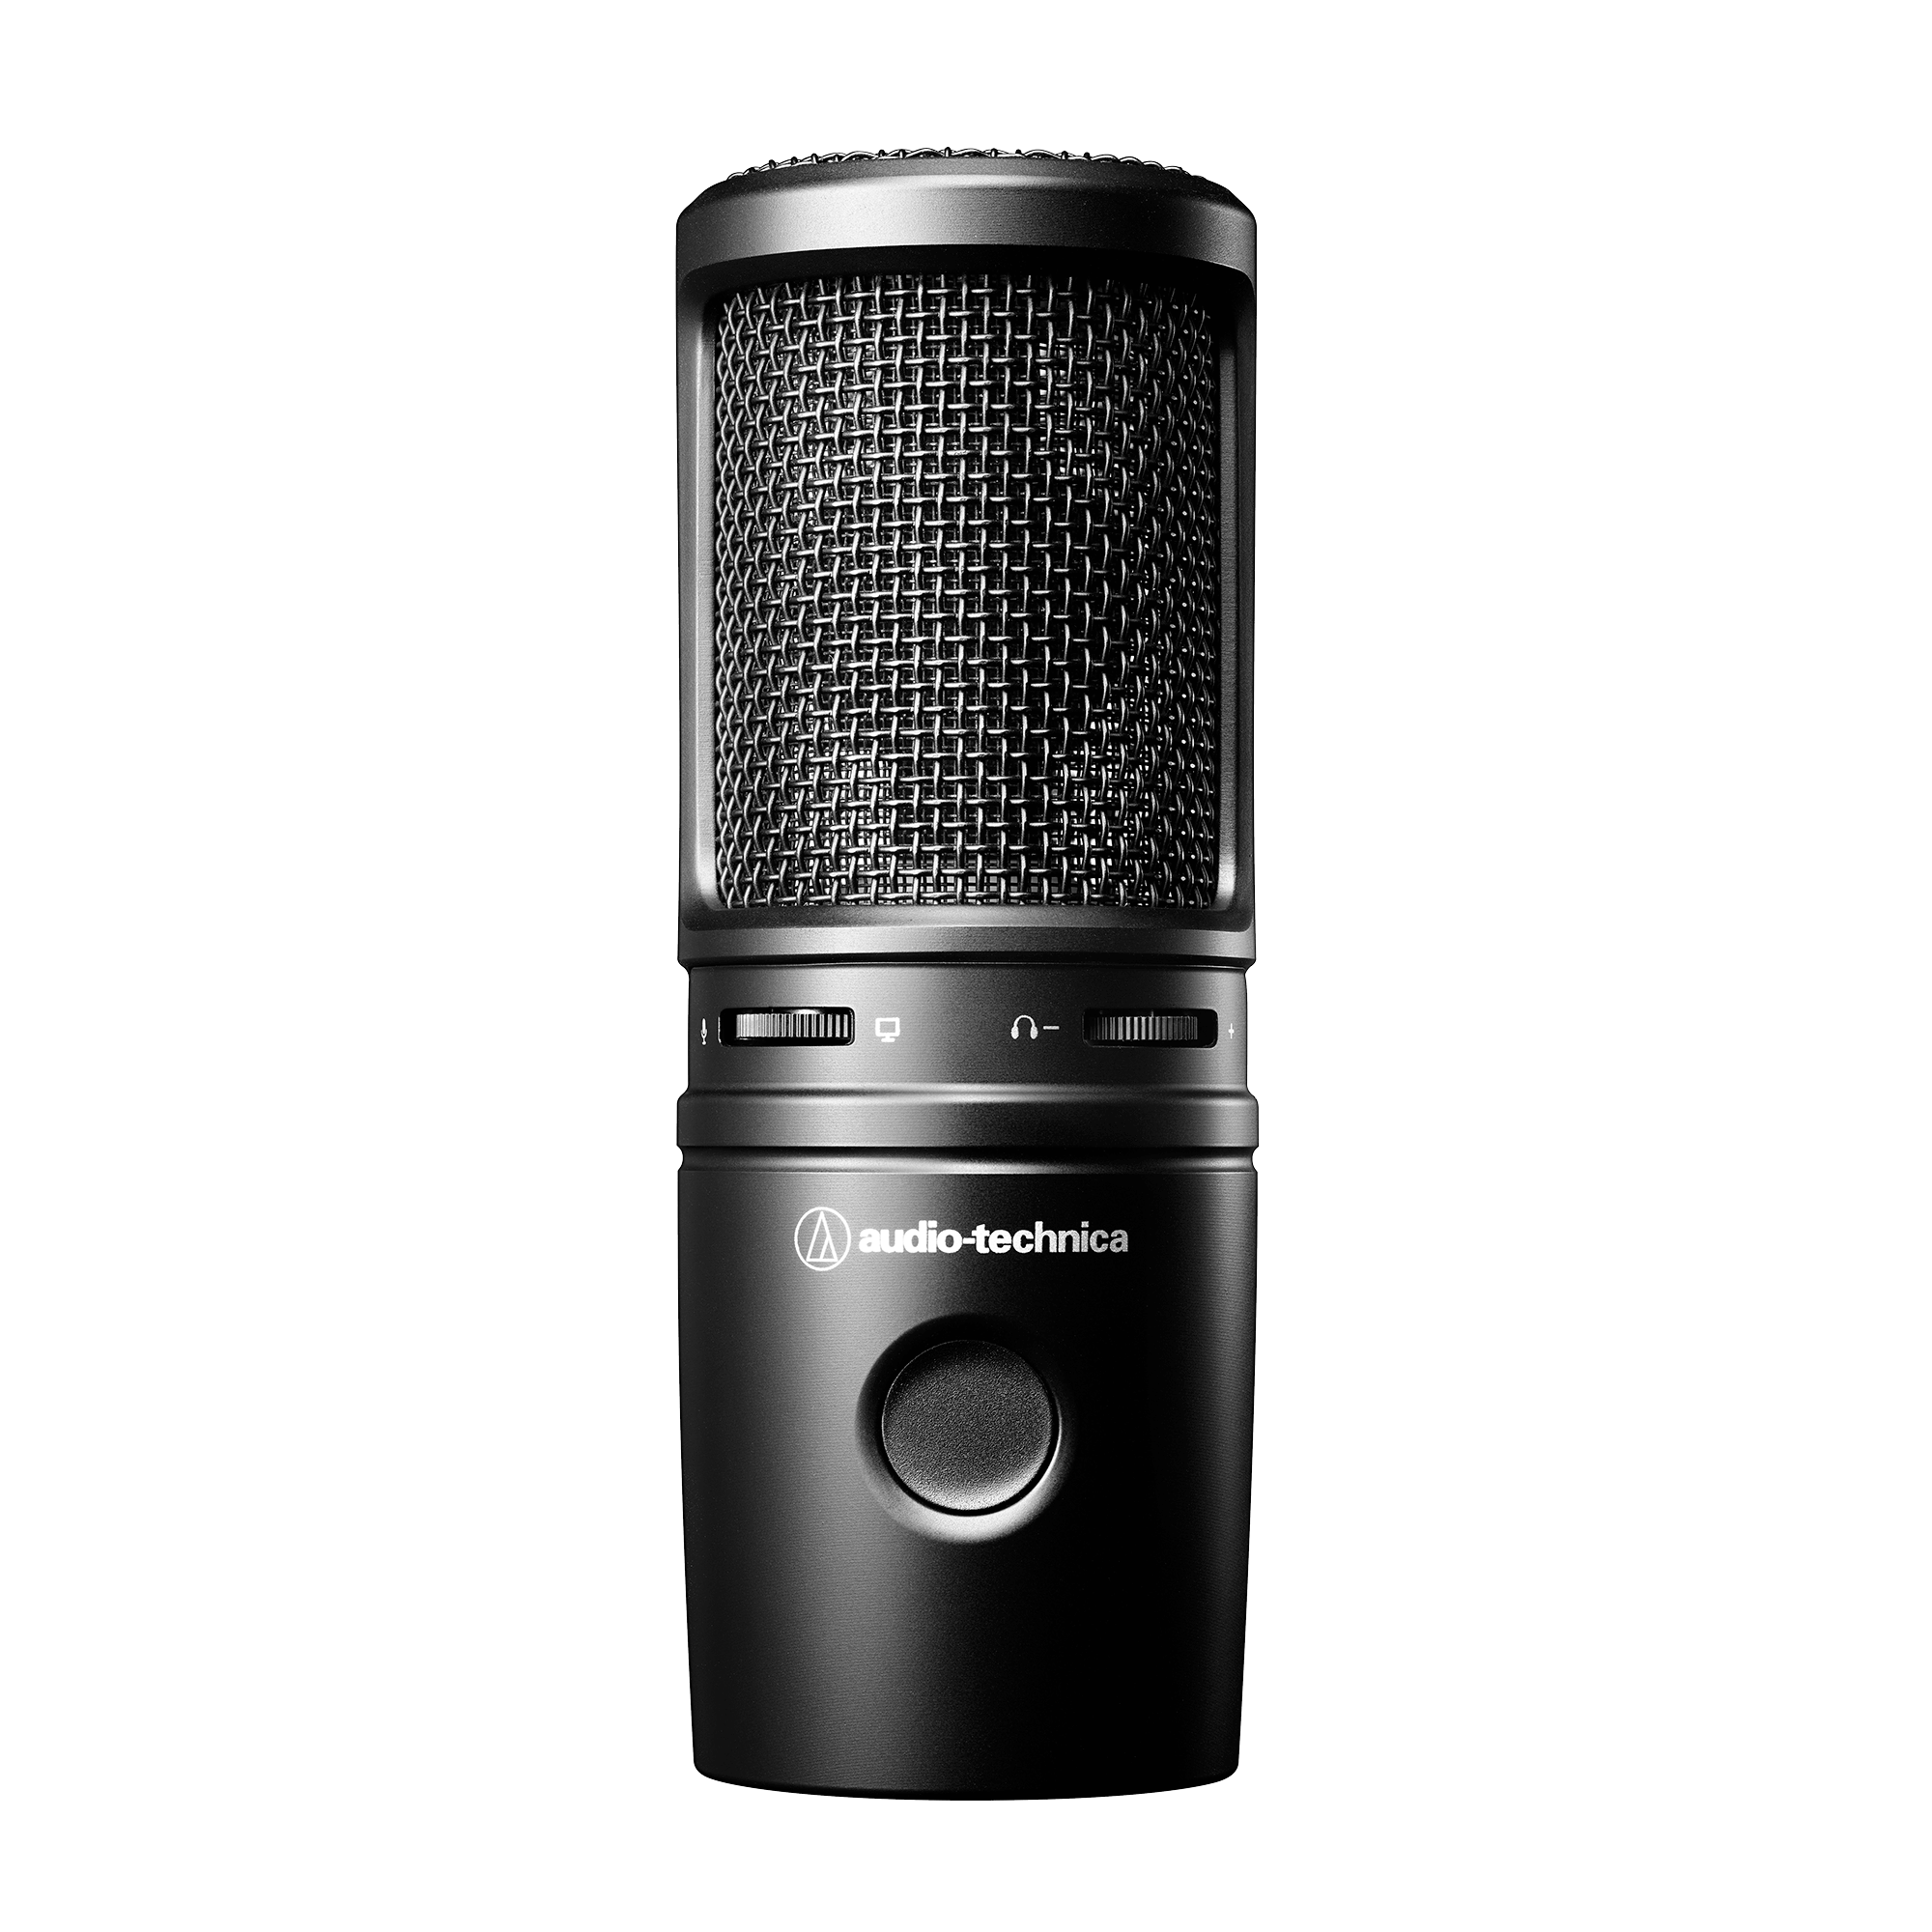 Audio Technica AT2020 Cardioid Condenser Studio XLR Microphone, Black  Microphone - Audio Technica 